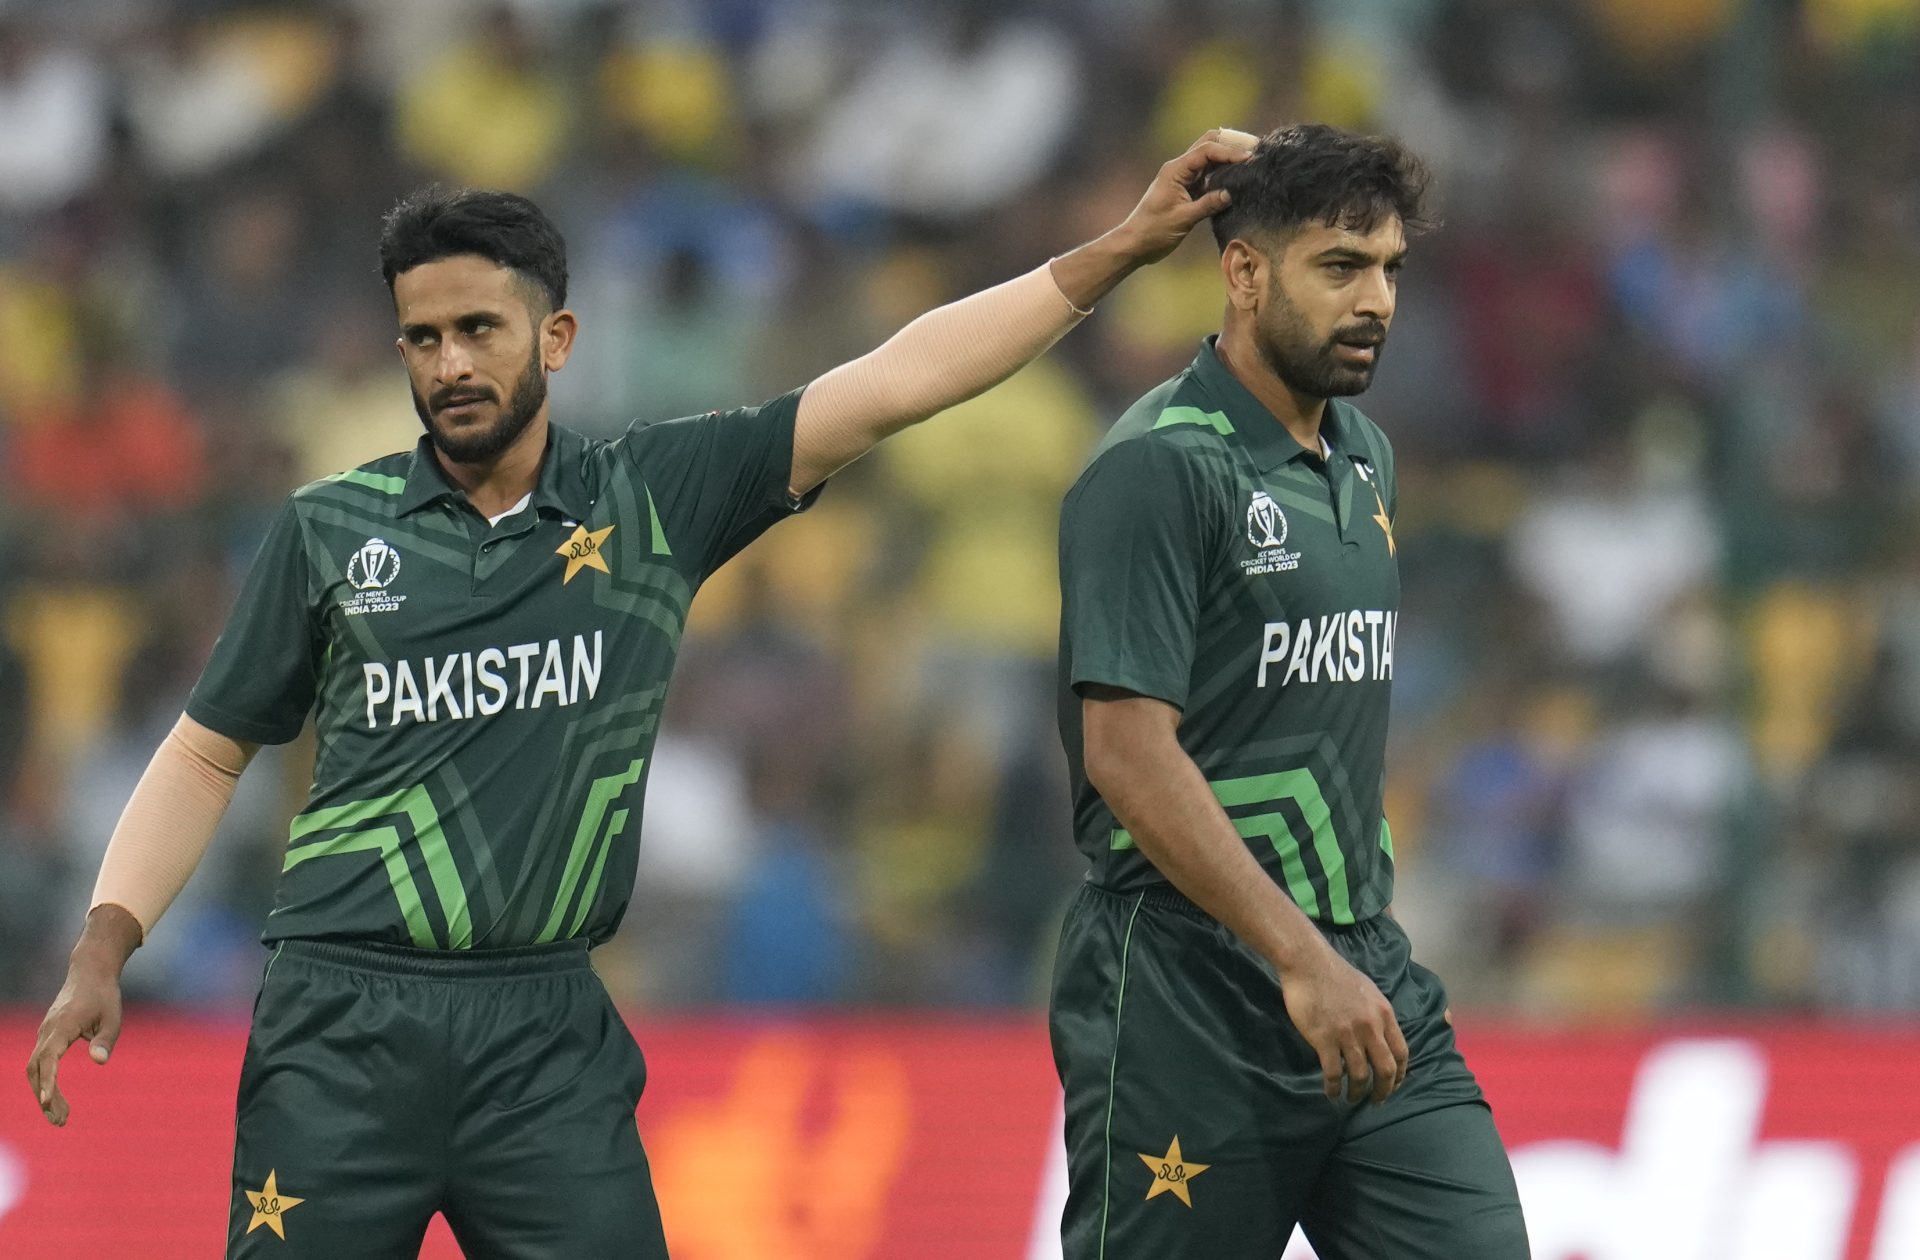 Équipe Pakistan T20 - Retours de Haris Rauf et Hasan Ali pour la tournée en Angleterre et Irlande